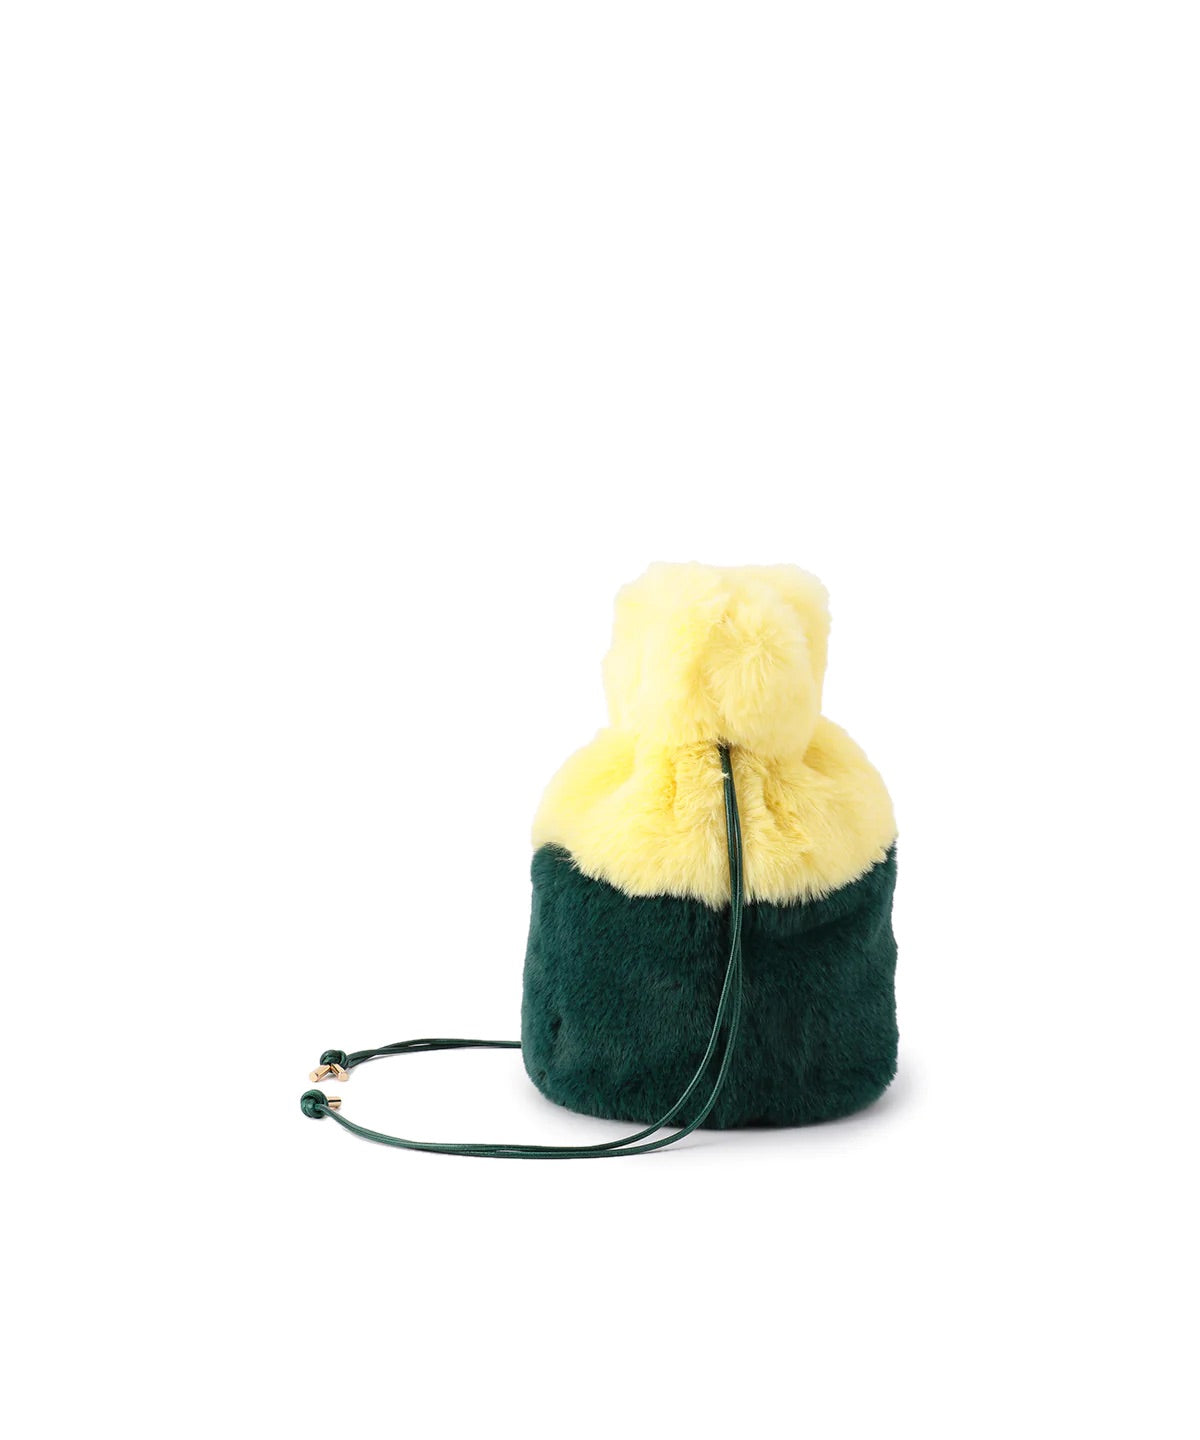 【期間限定ポーチS付き】Eco Fur Drawstring Bag (Small) YELLOW×GREEN